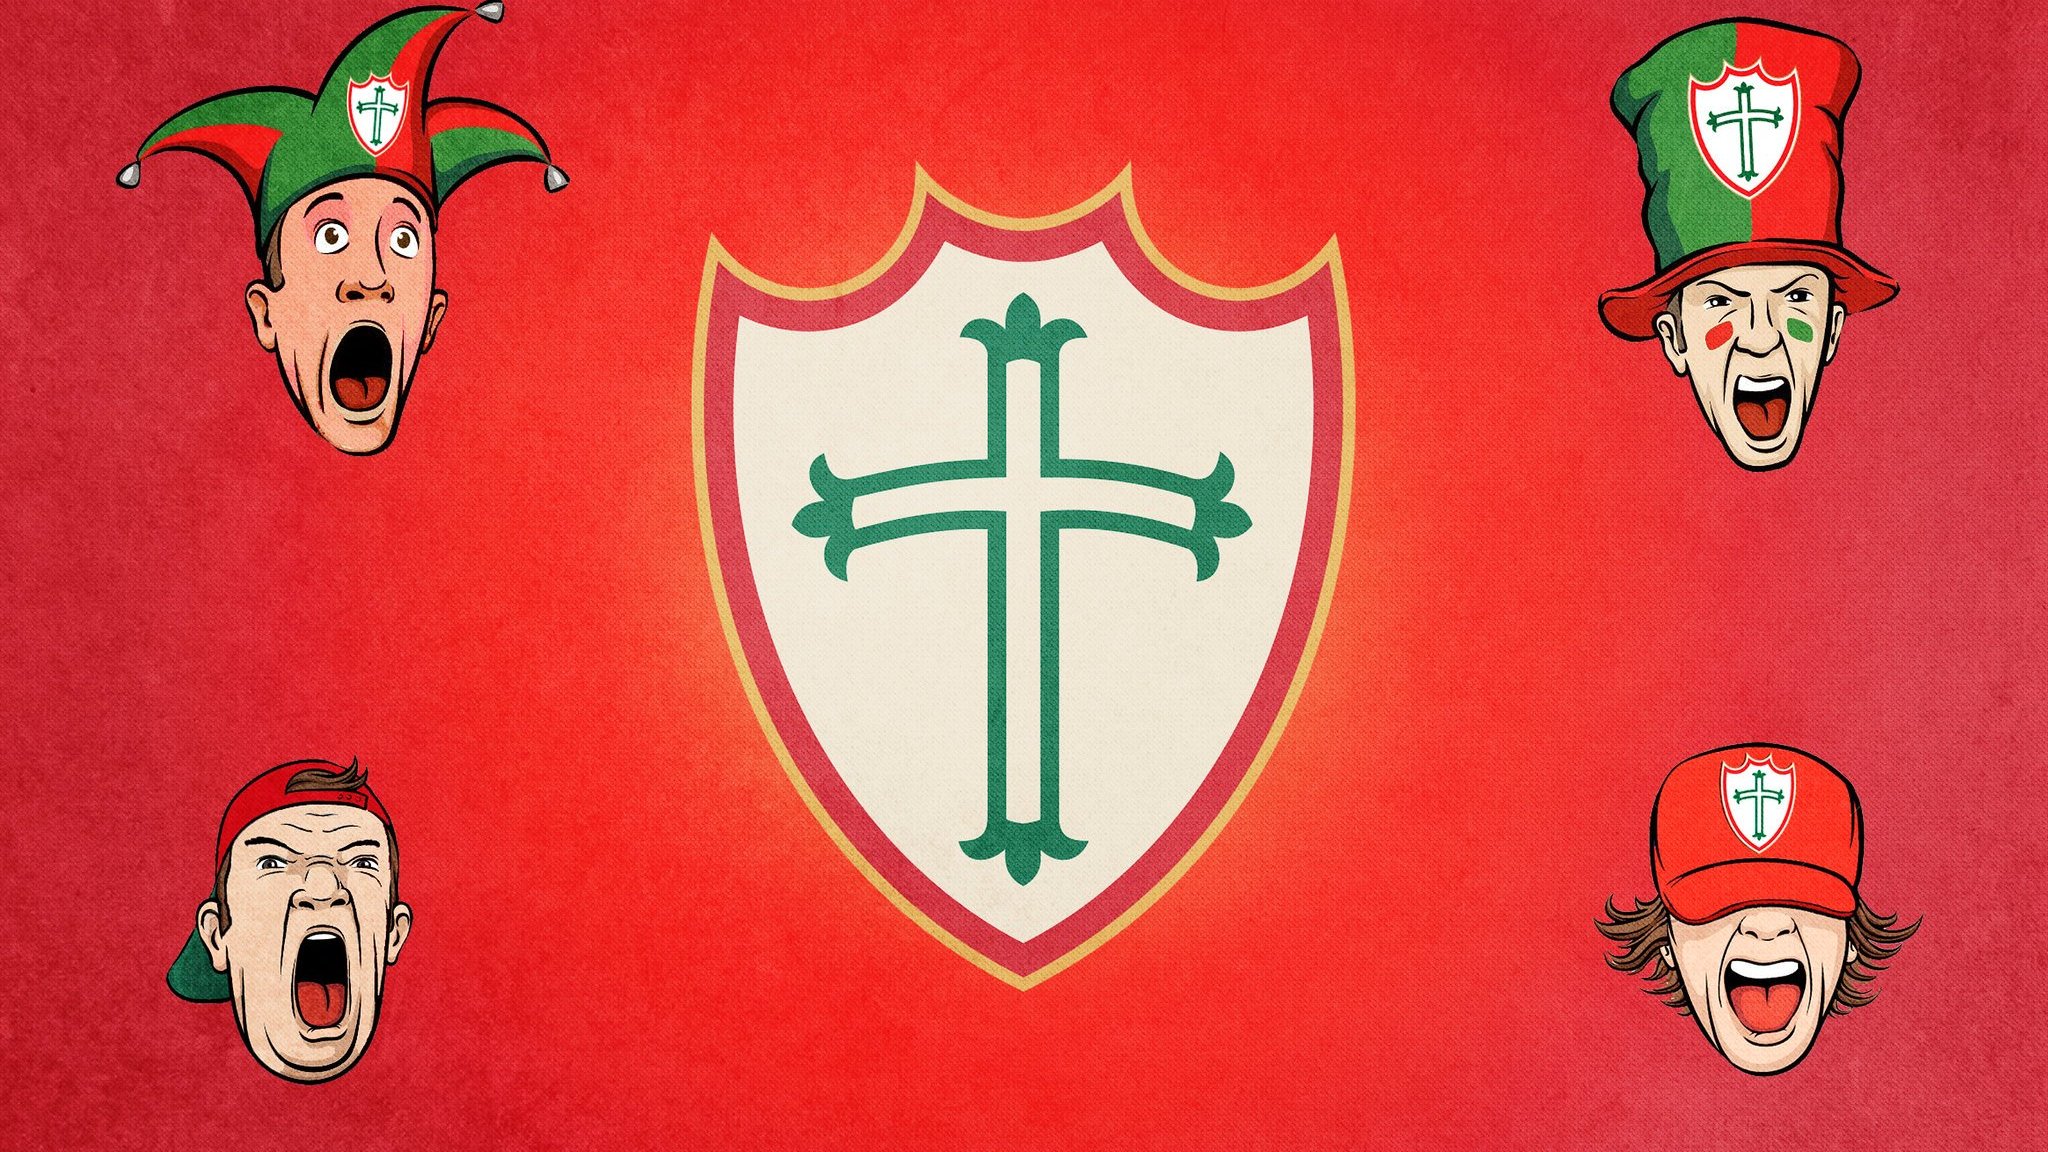 Montagem gráfica de símbolo da Portuguesa cercado por rostos de torcedores.